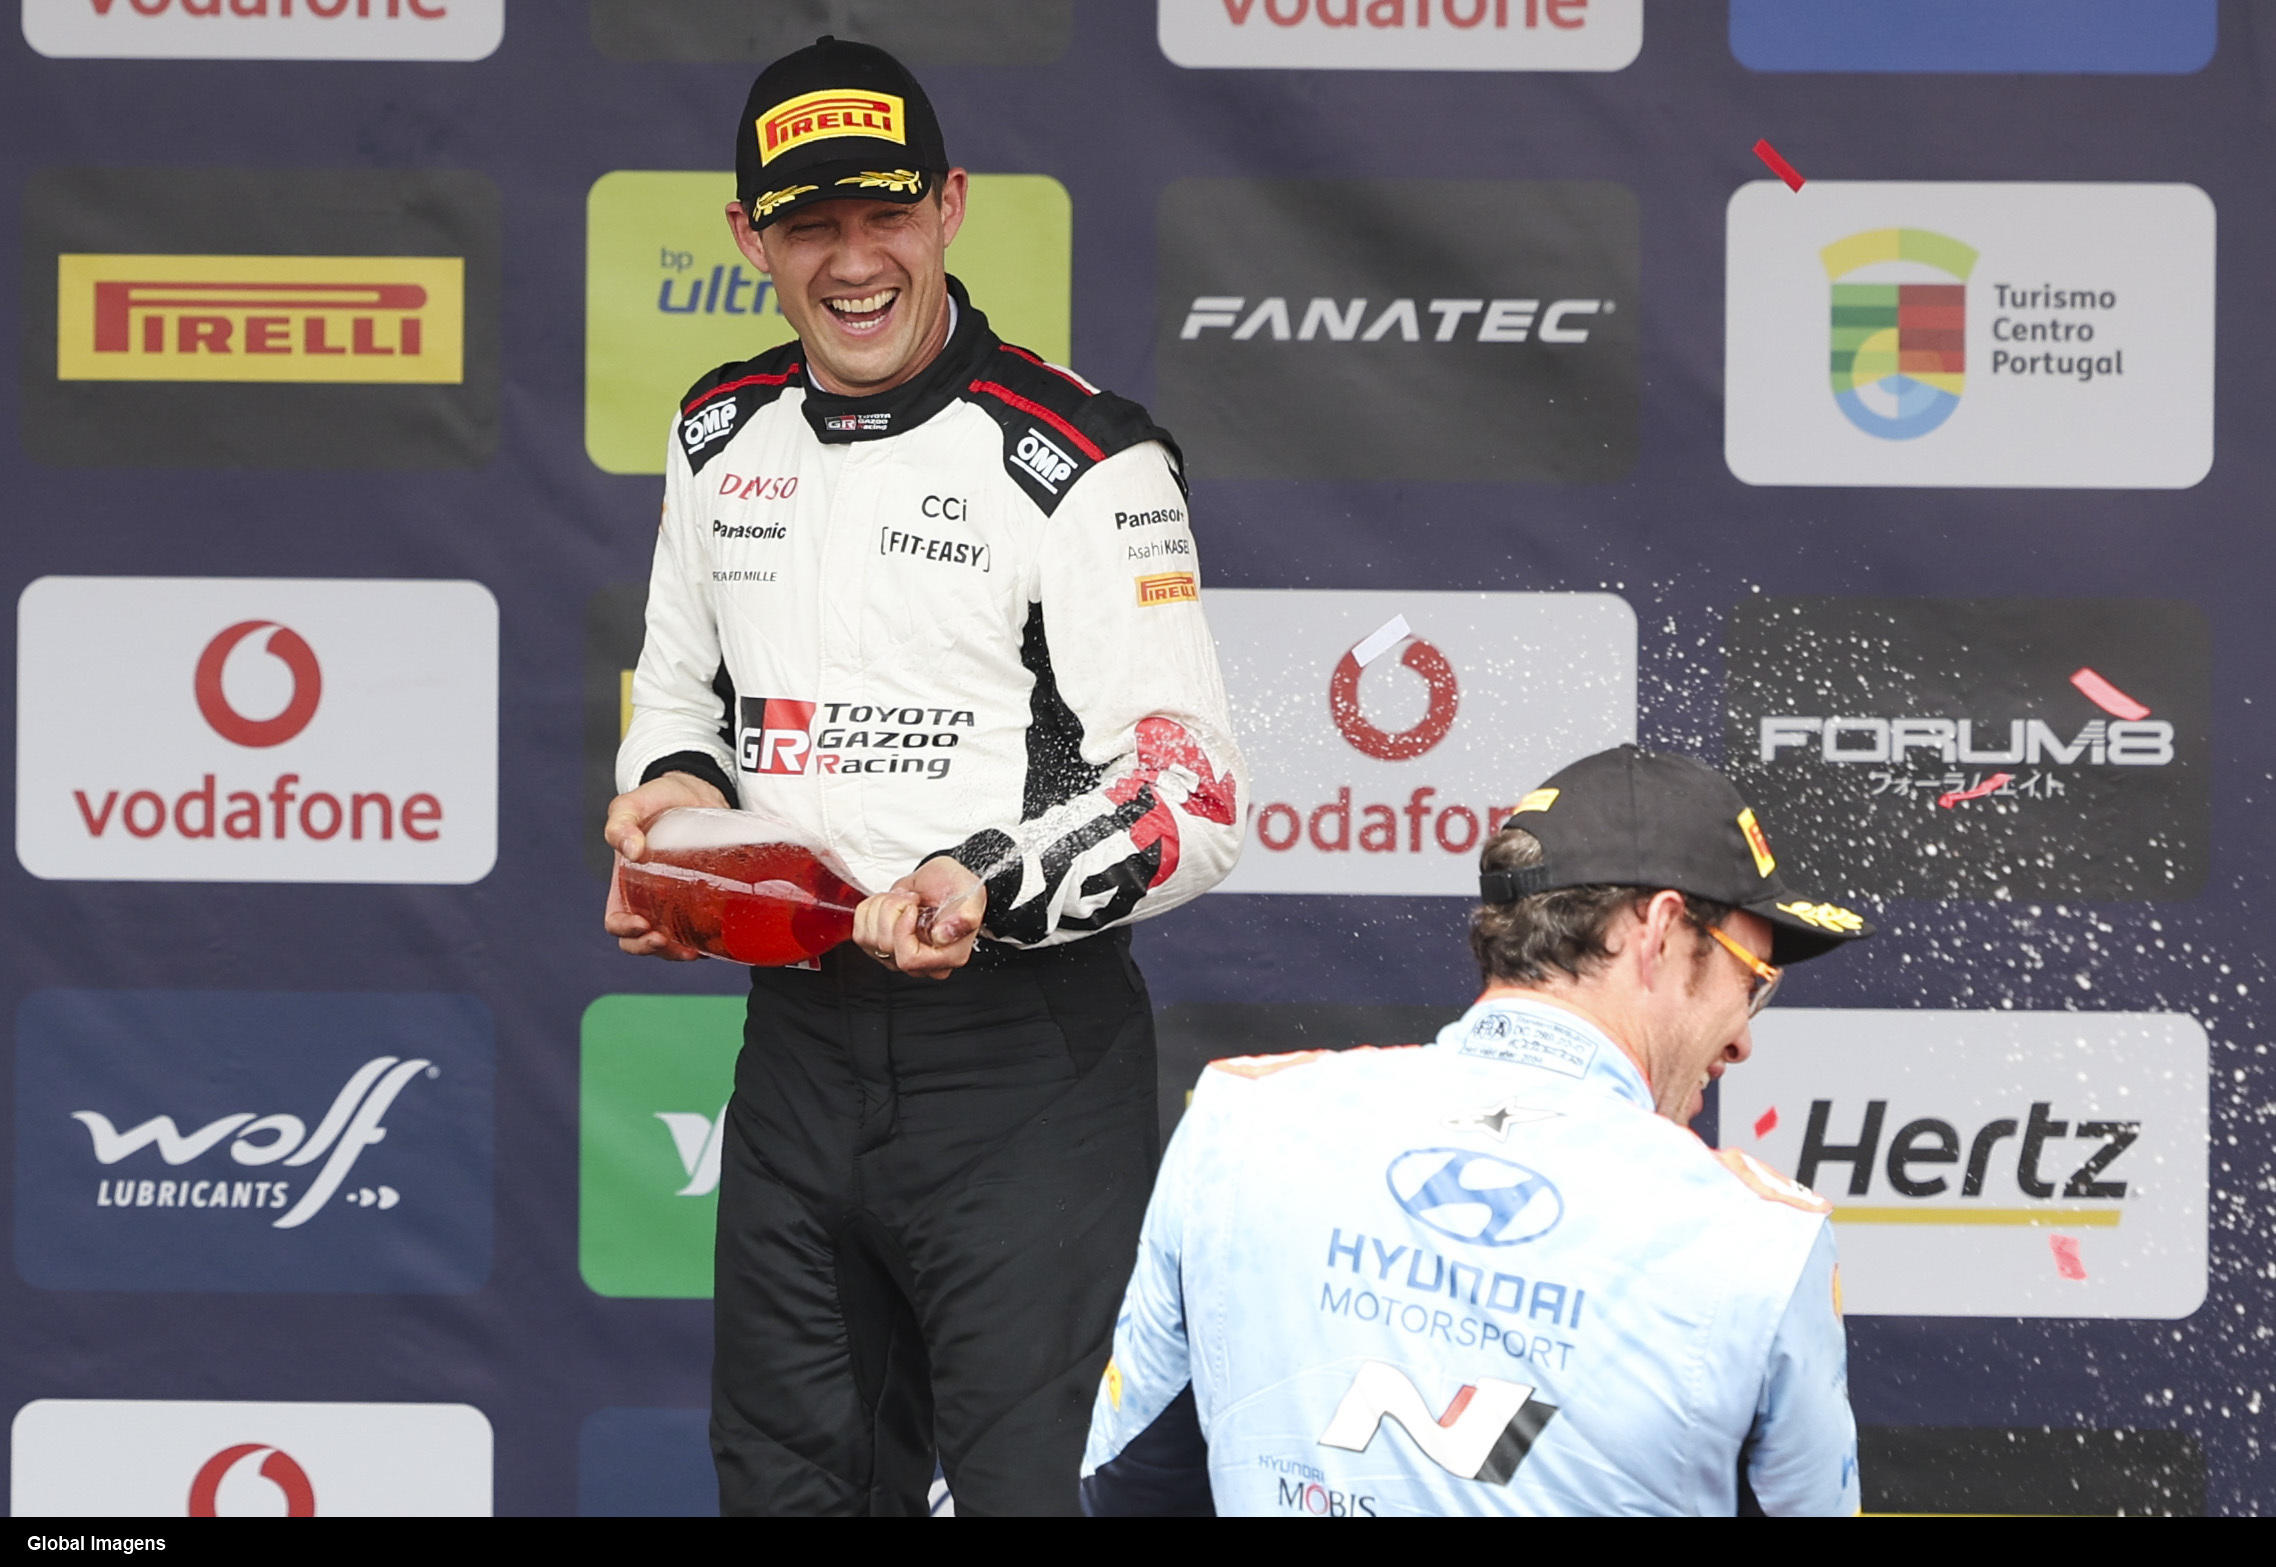 Le pilote Toyota a remporté son sixième rallye du Portugal, un record. (Adelinirelereles/Global Imagens)